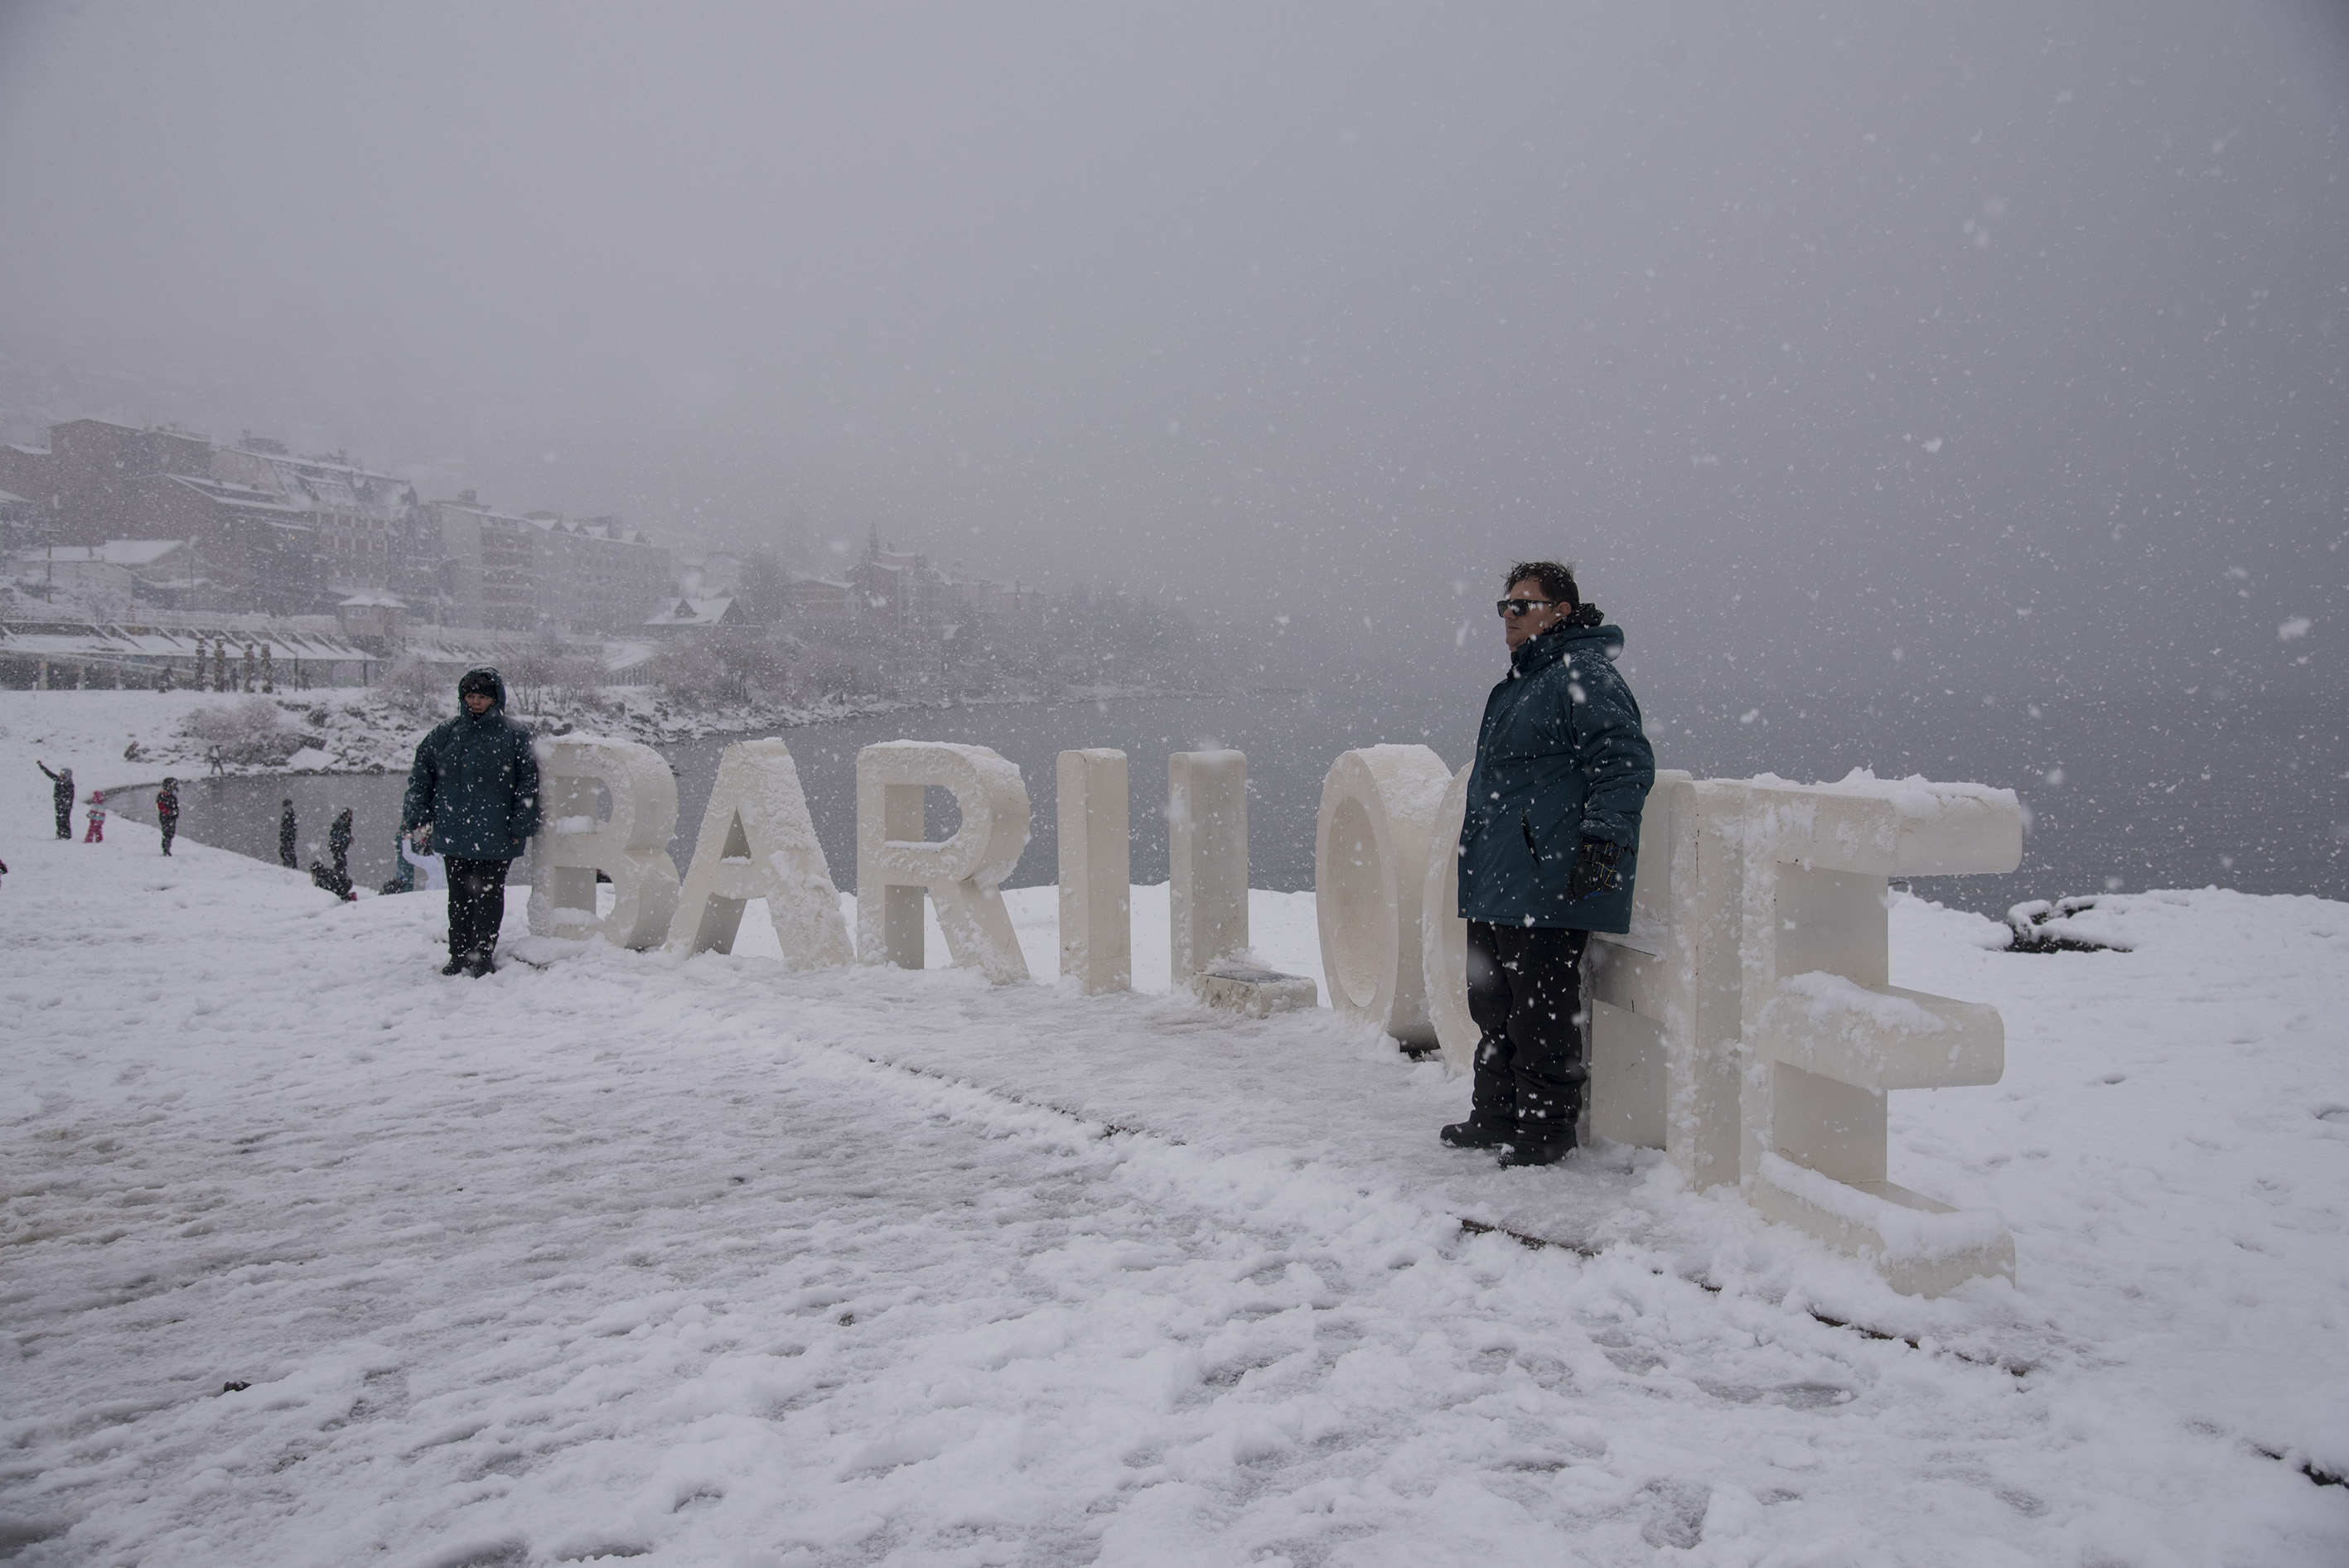 Los turistas disfrutan de la nieve a pesar de las complicaciones para transitar. (Foto: Marcelo Martínez)